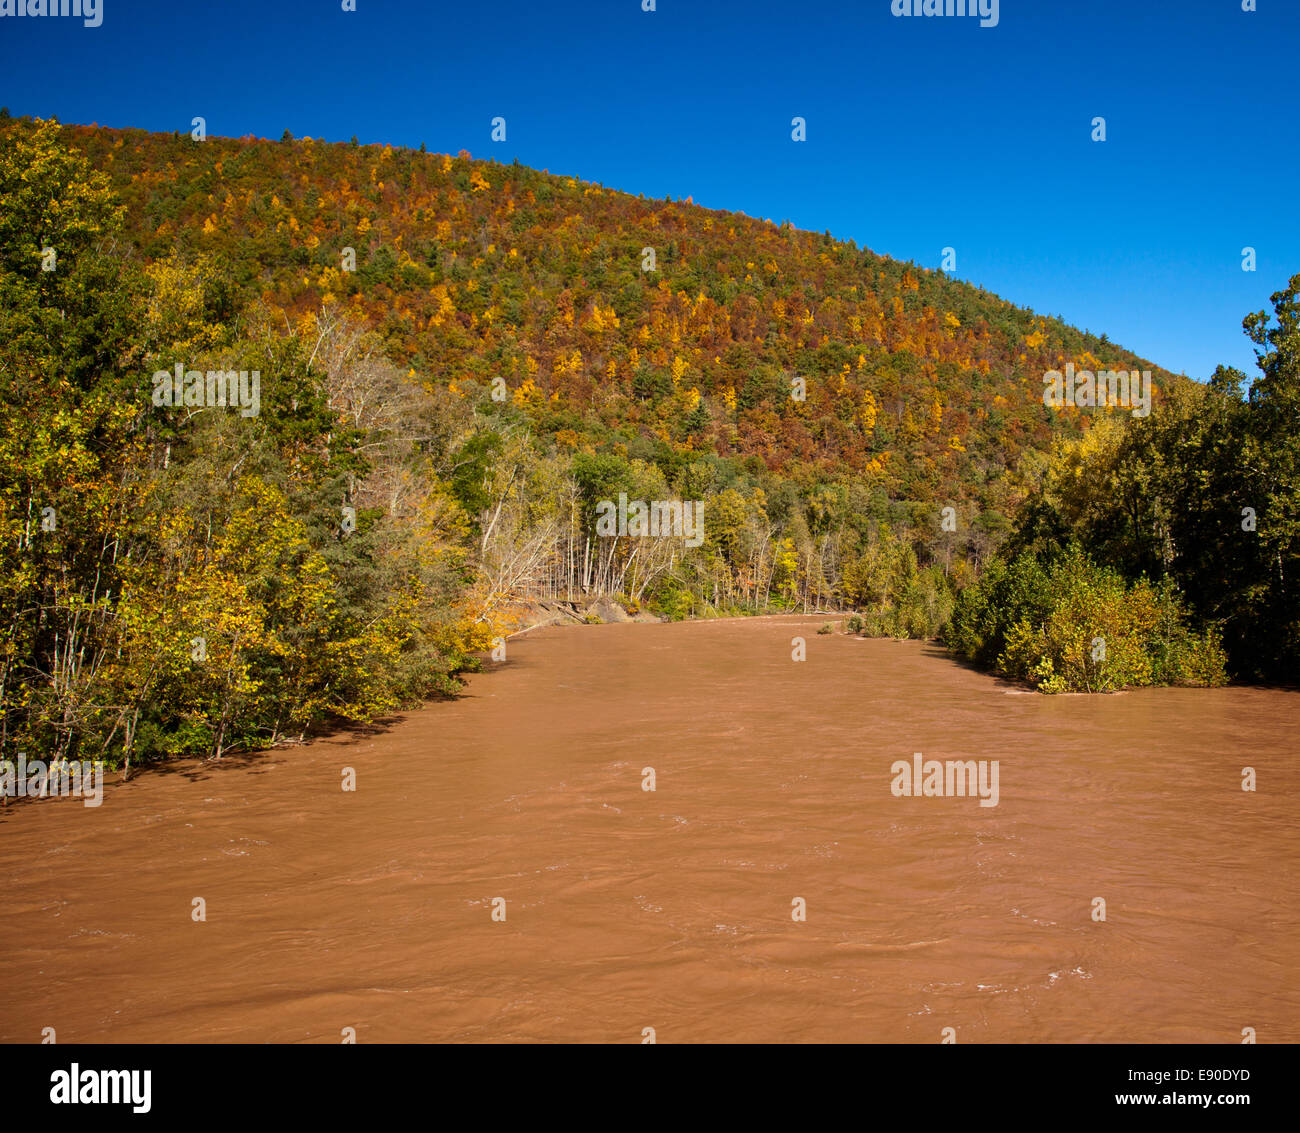 Raging río inundado Foto de stock